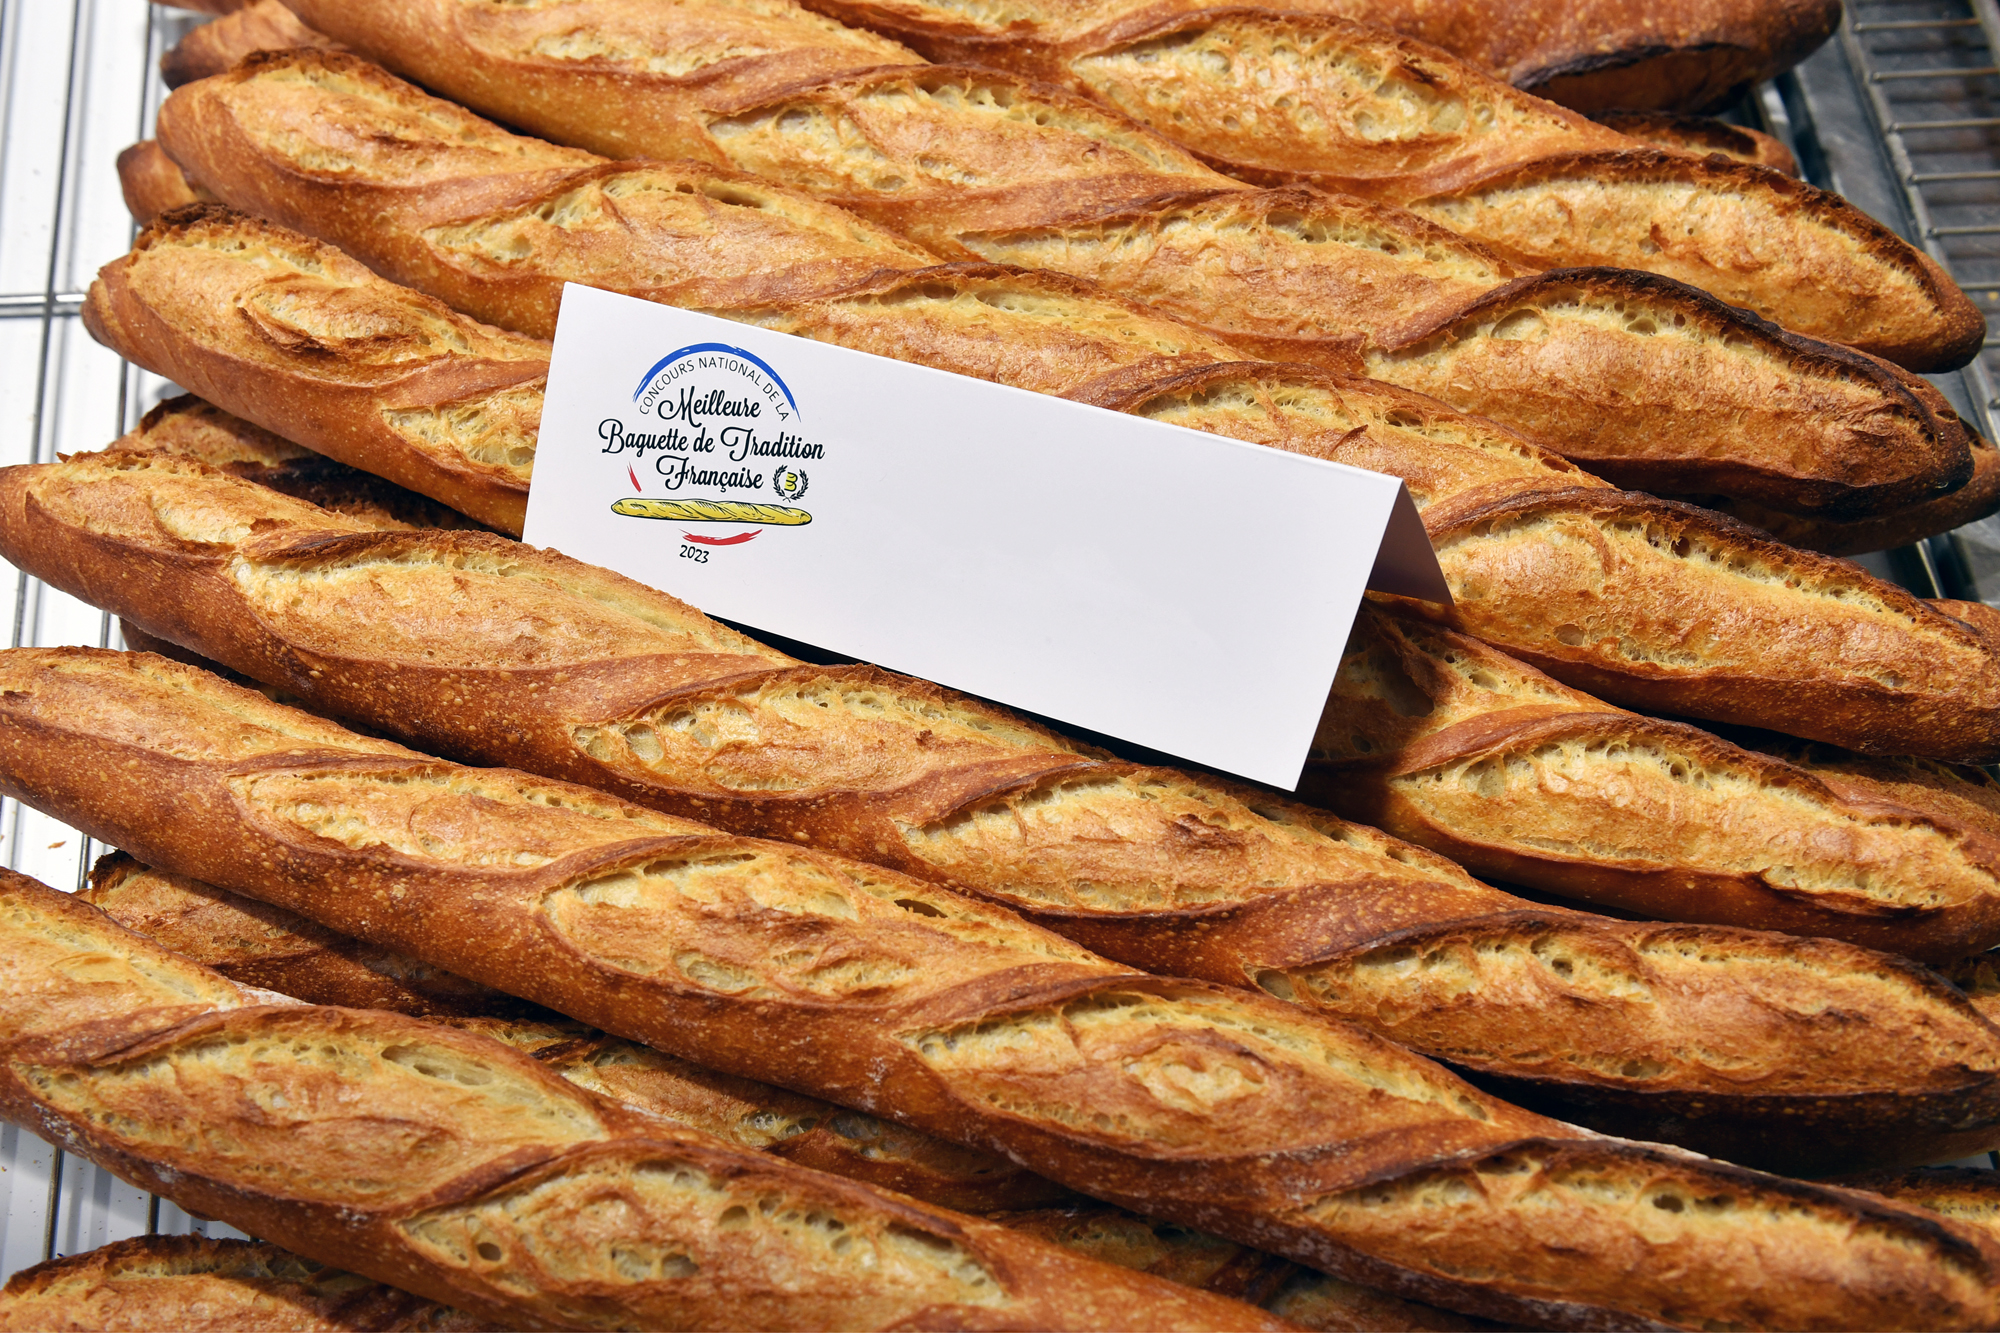 Résultats de la 9ème édition du Concours national de la Meilleure Baguette de Tradition Française